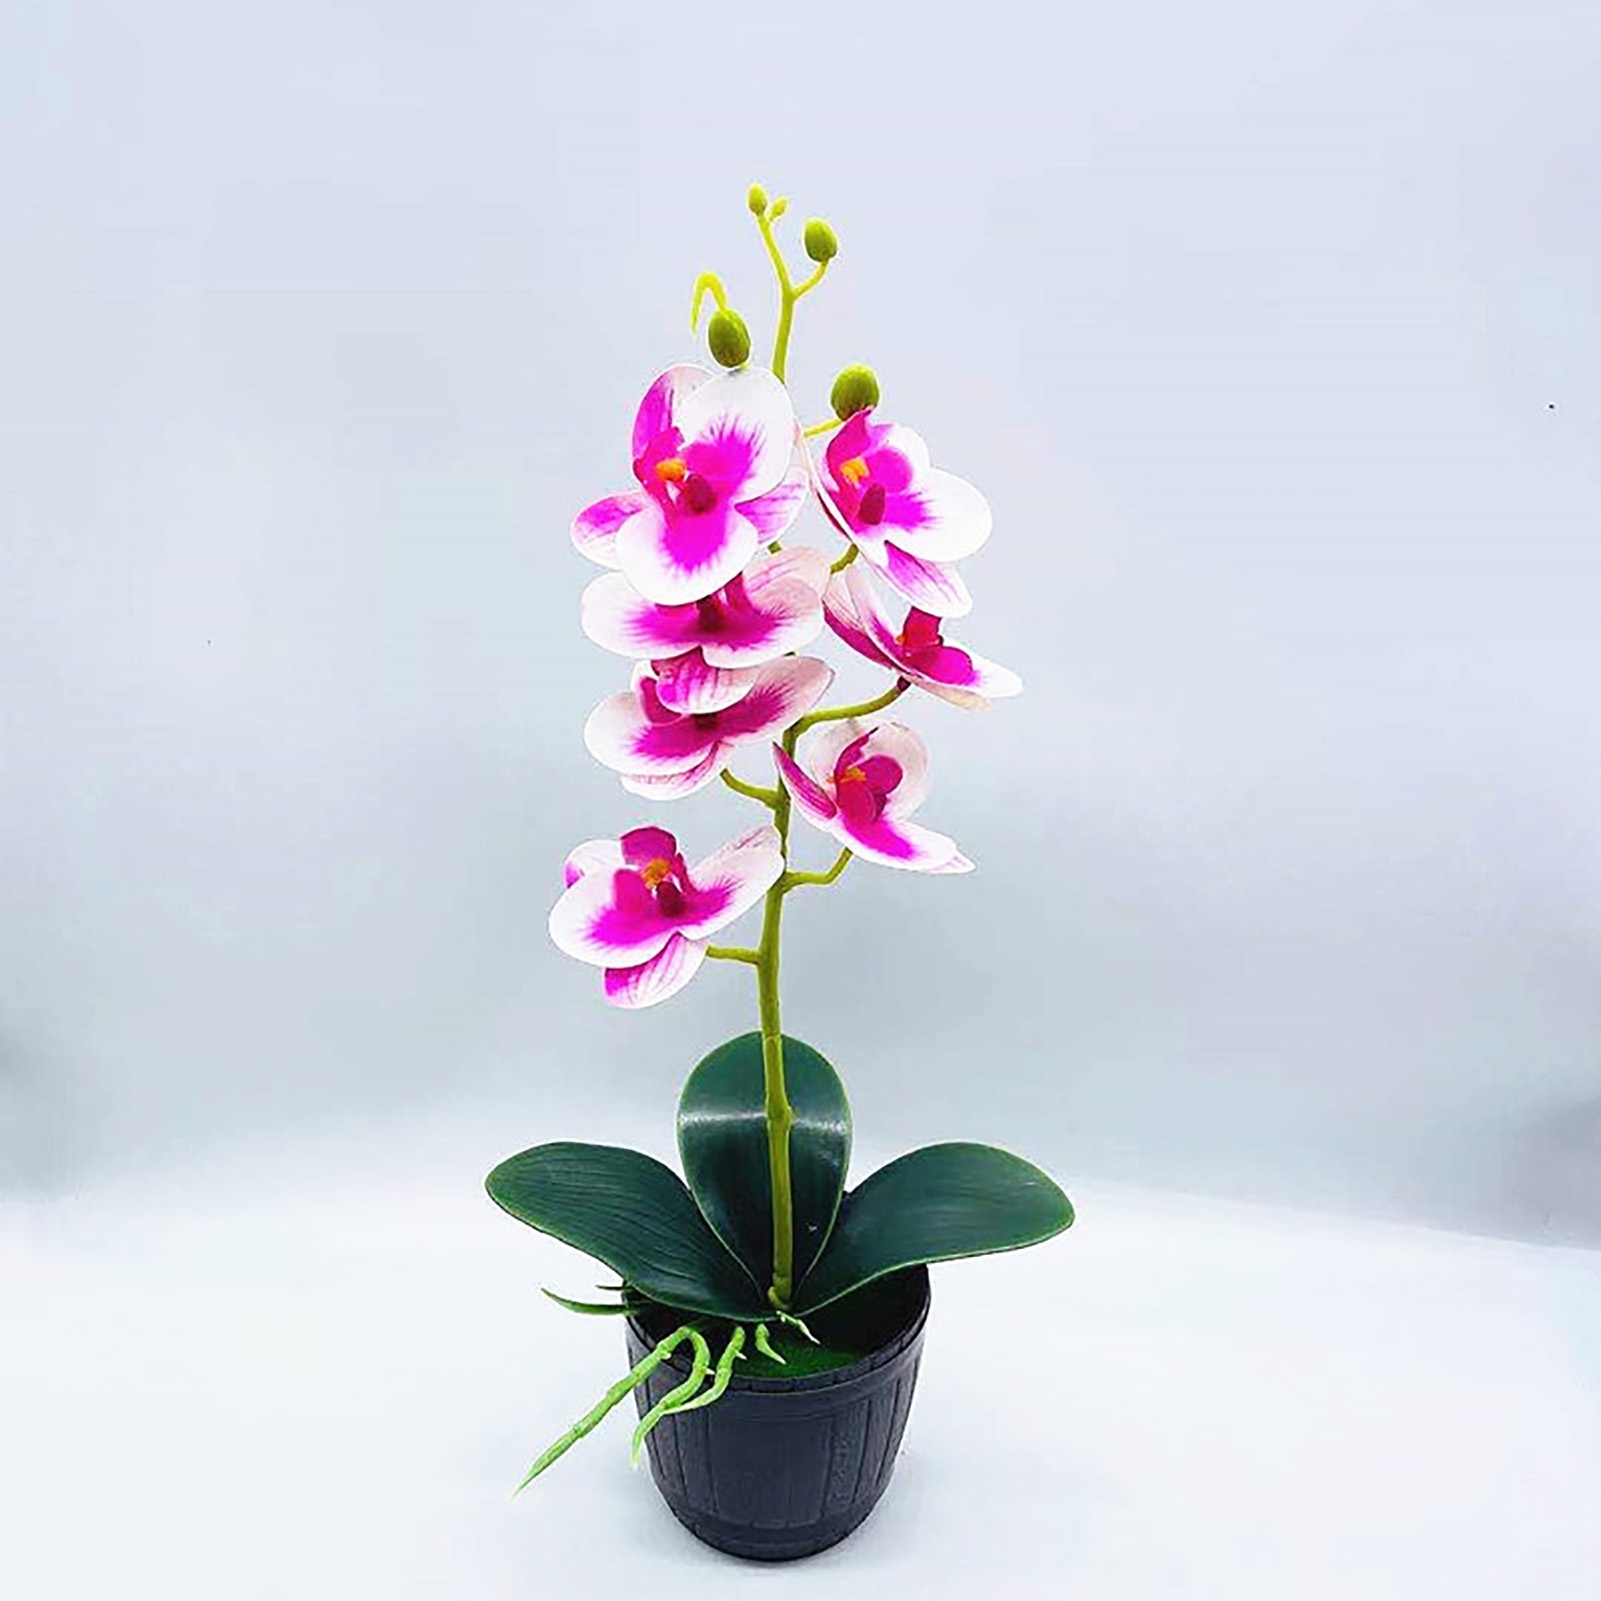 Кашпо для орхидей декоративное. Орхидея в горшке в подарок. Орхидея в горшке белая с фиолетом. Орхидея в кашпо китайском. Орхидея в горшке екатеринбург